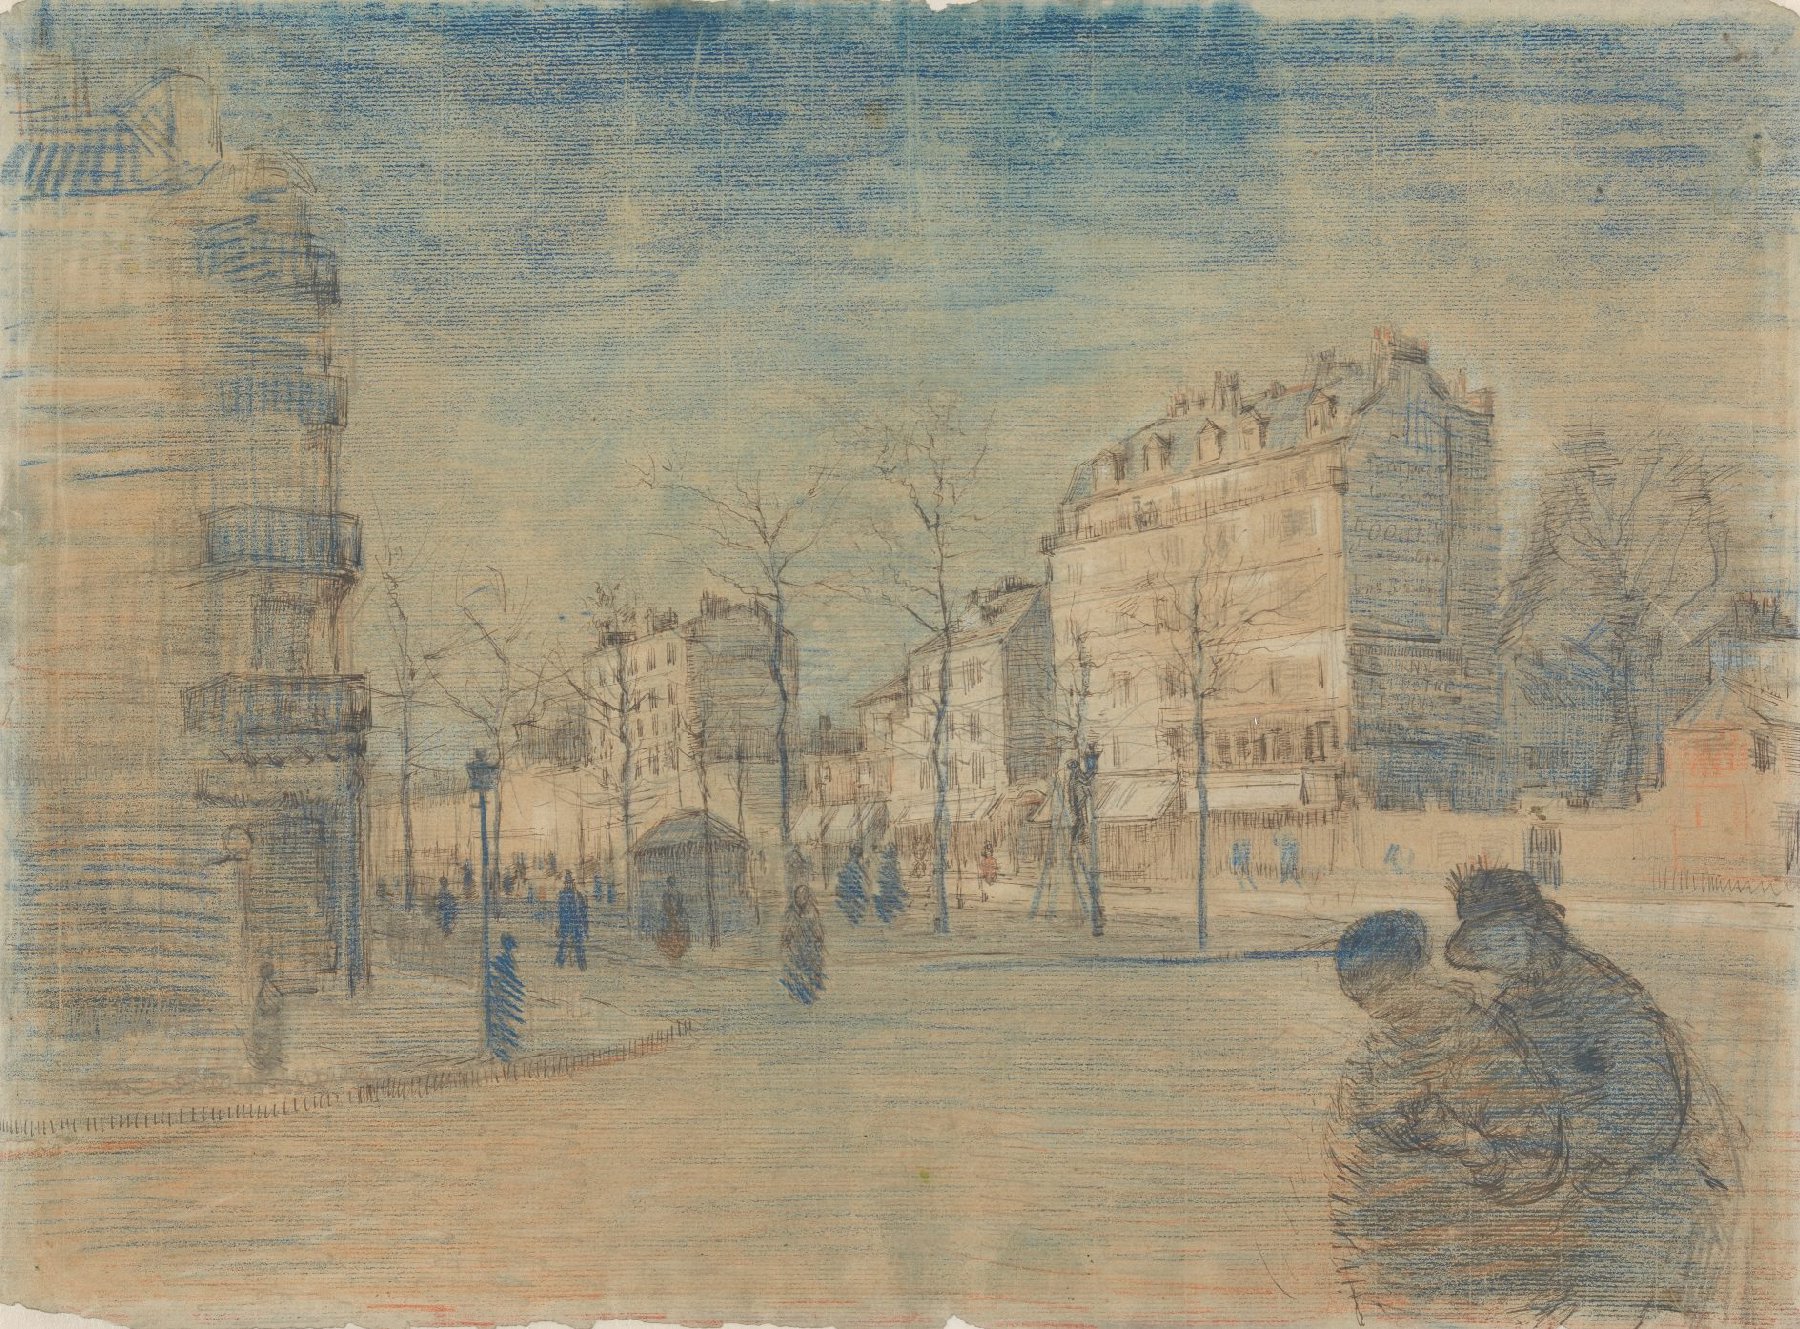 Boulevard de Clichy Vincent van Gogh (1853 - 1890), Parijs, februari 1887